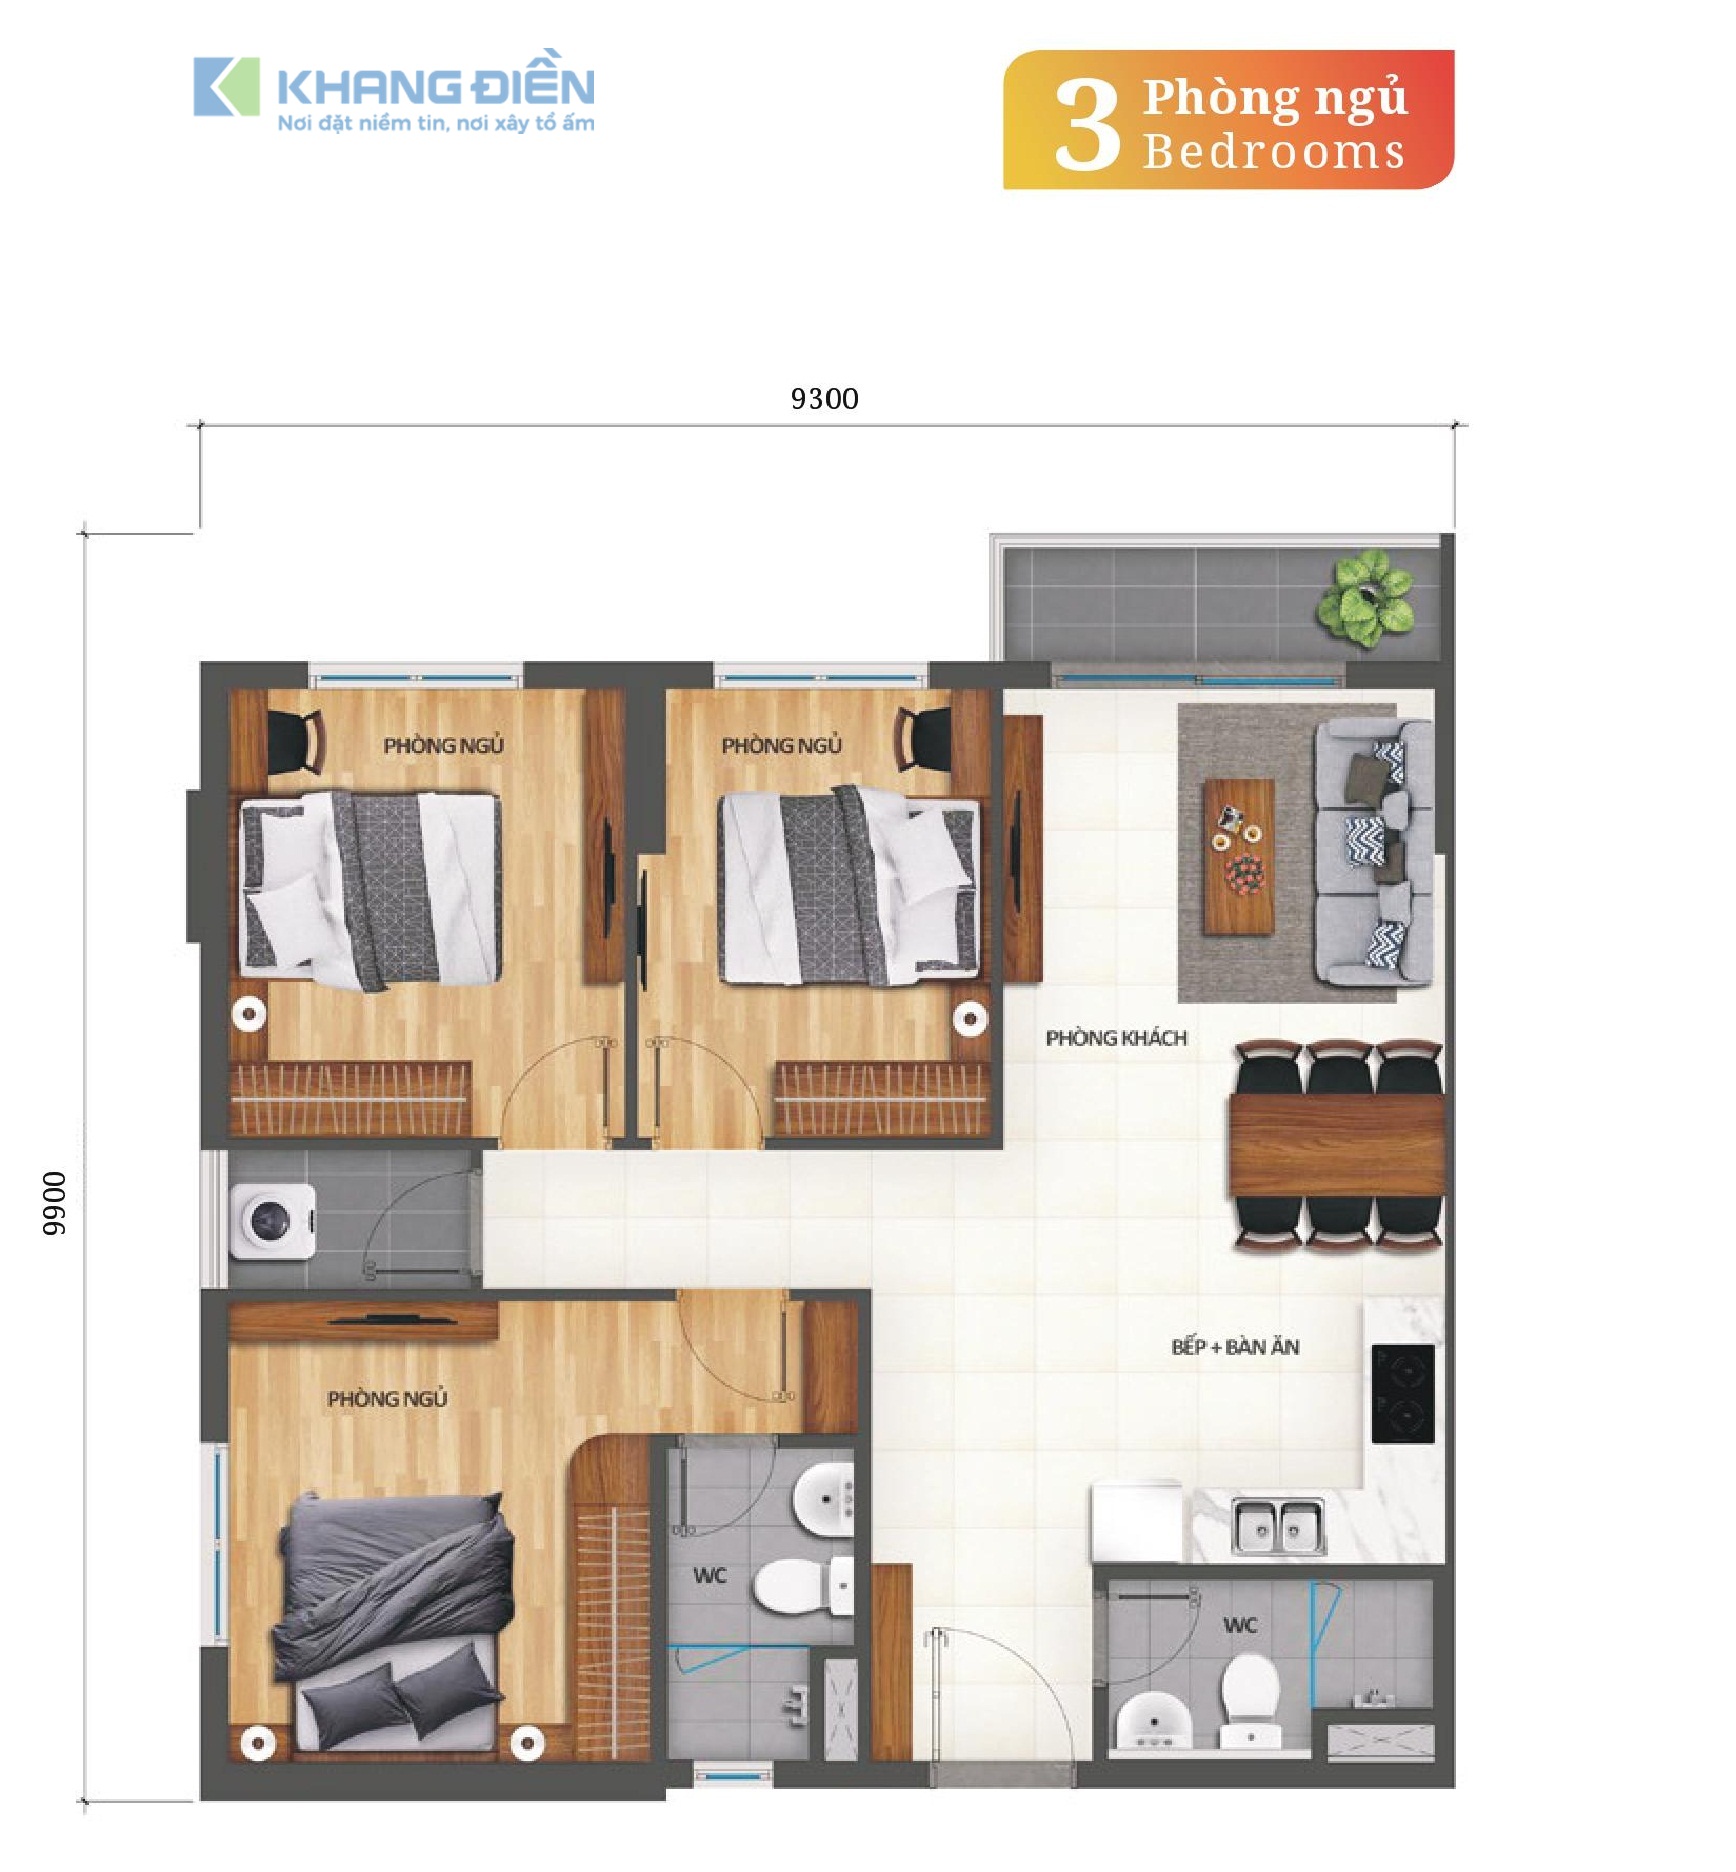 Thiết kế căn hộ 3 phòng ngủ, 2WC diện tích 82m2tại dự án Khang Điền Bình Tân - Khang Điền HCM